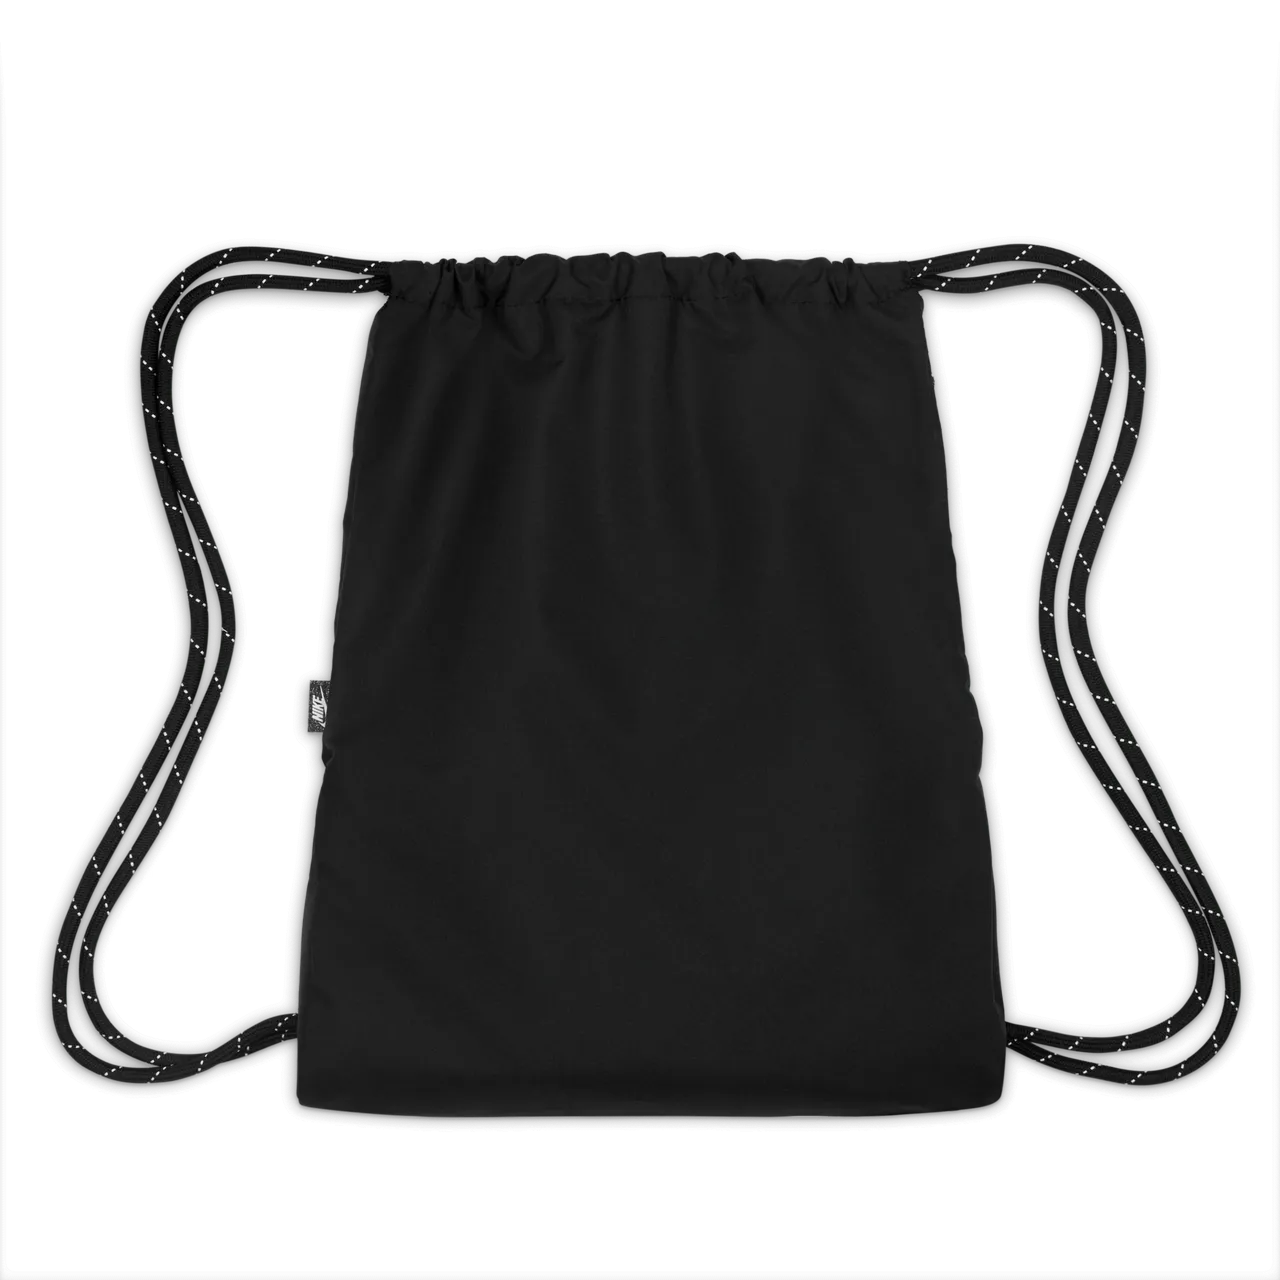 Nike Heritage Drawstring Bag (13L) - Black - Polyester